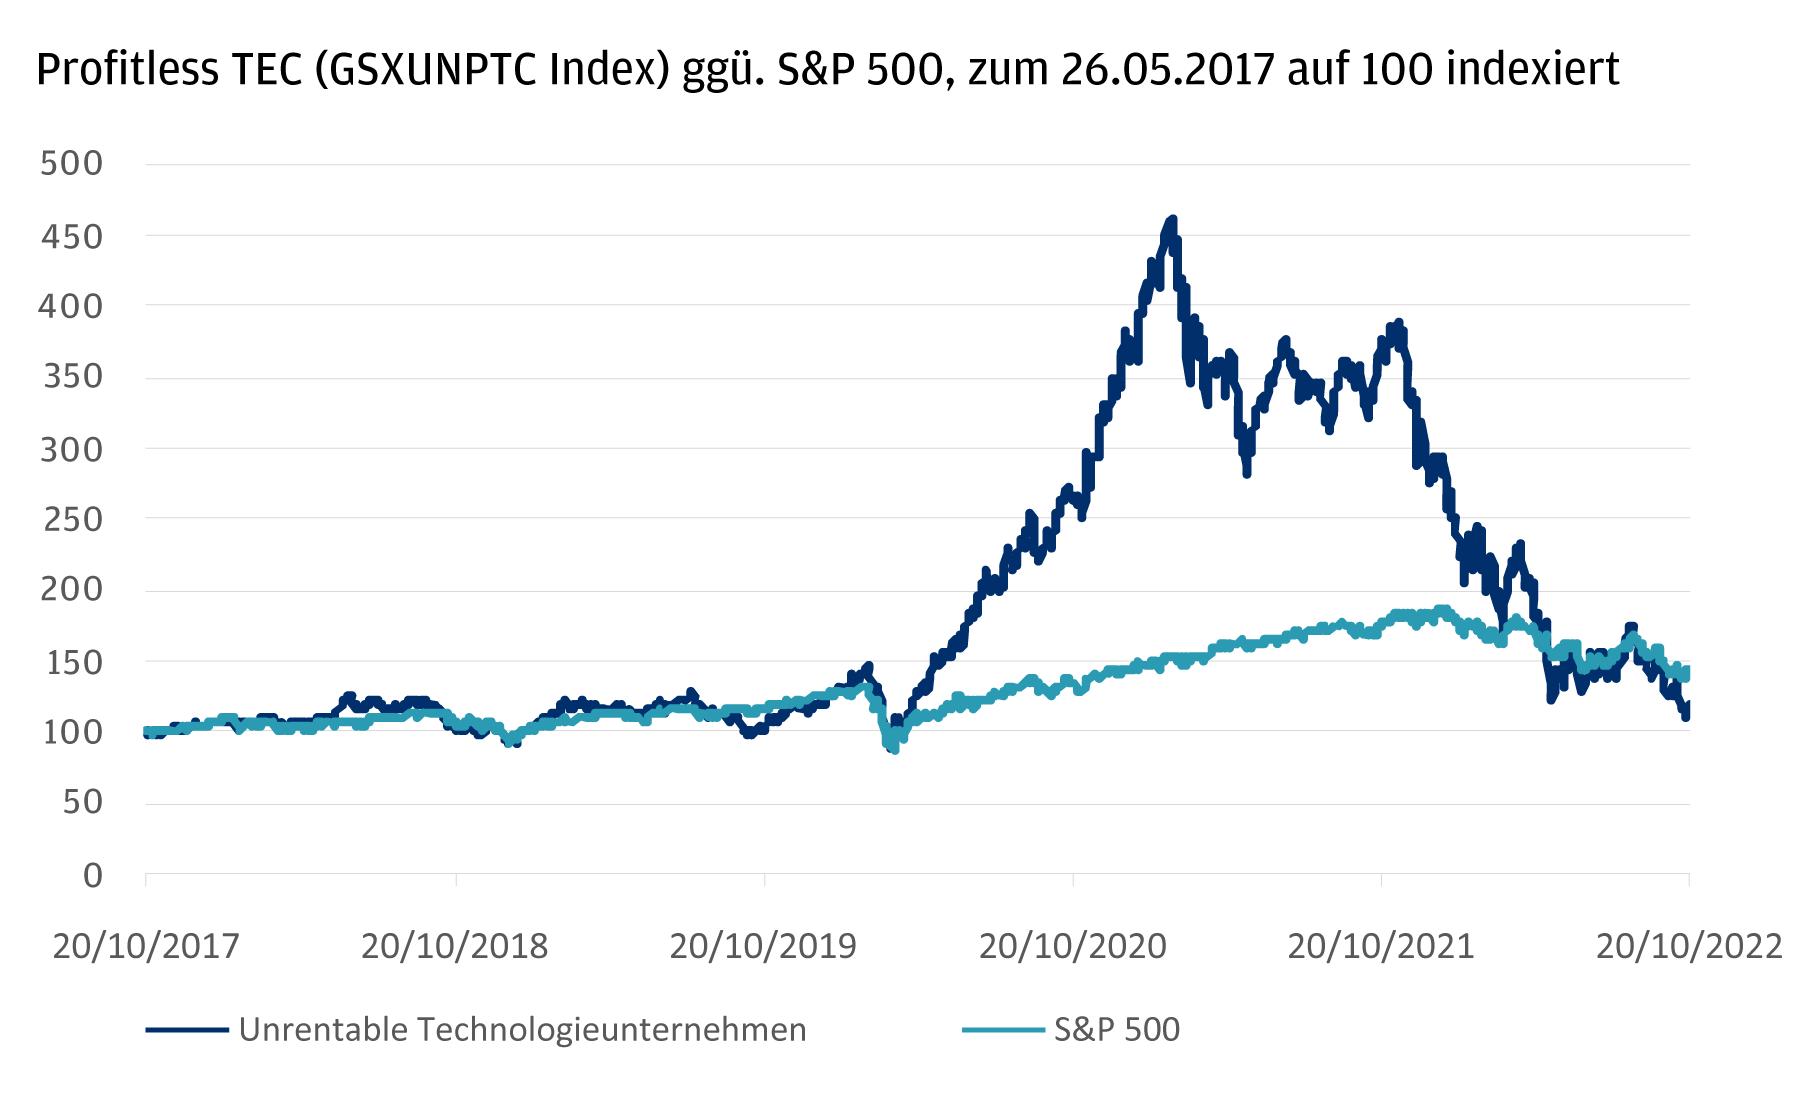 Dies ist ein Liniendiagramm, das die Wertentwicklung des unrentablen Technologieindex gegenüber dem S&P 500 von 2017 bis 2022 darstellt. Beide Indizes liegen von 2017 bis zum Beginn der Pandemie 2020 nah beieinander, woraufhin der unrentable Technologieindex deutlich steigt, bevor er 2022 wieder mit dem S&P übereinstimmt. 